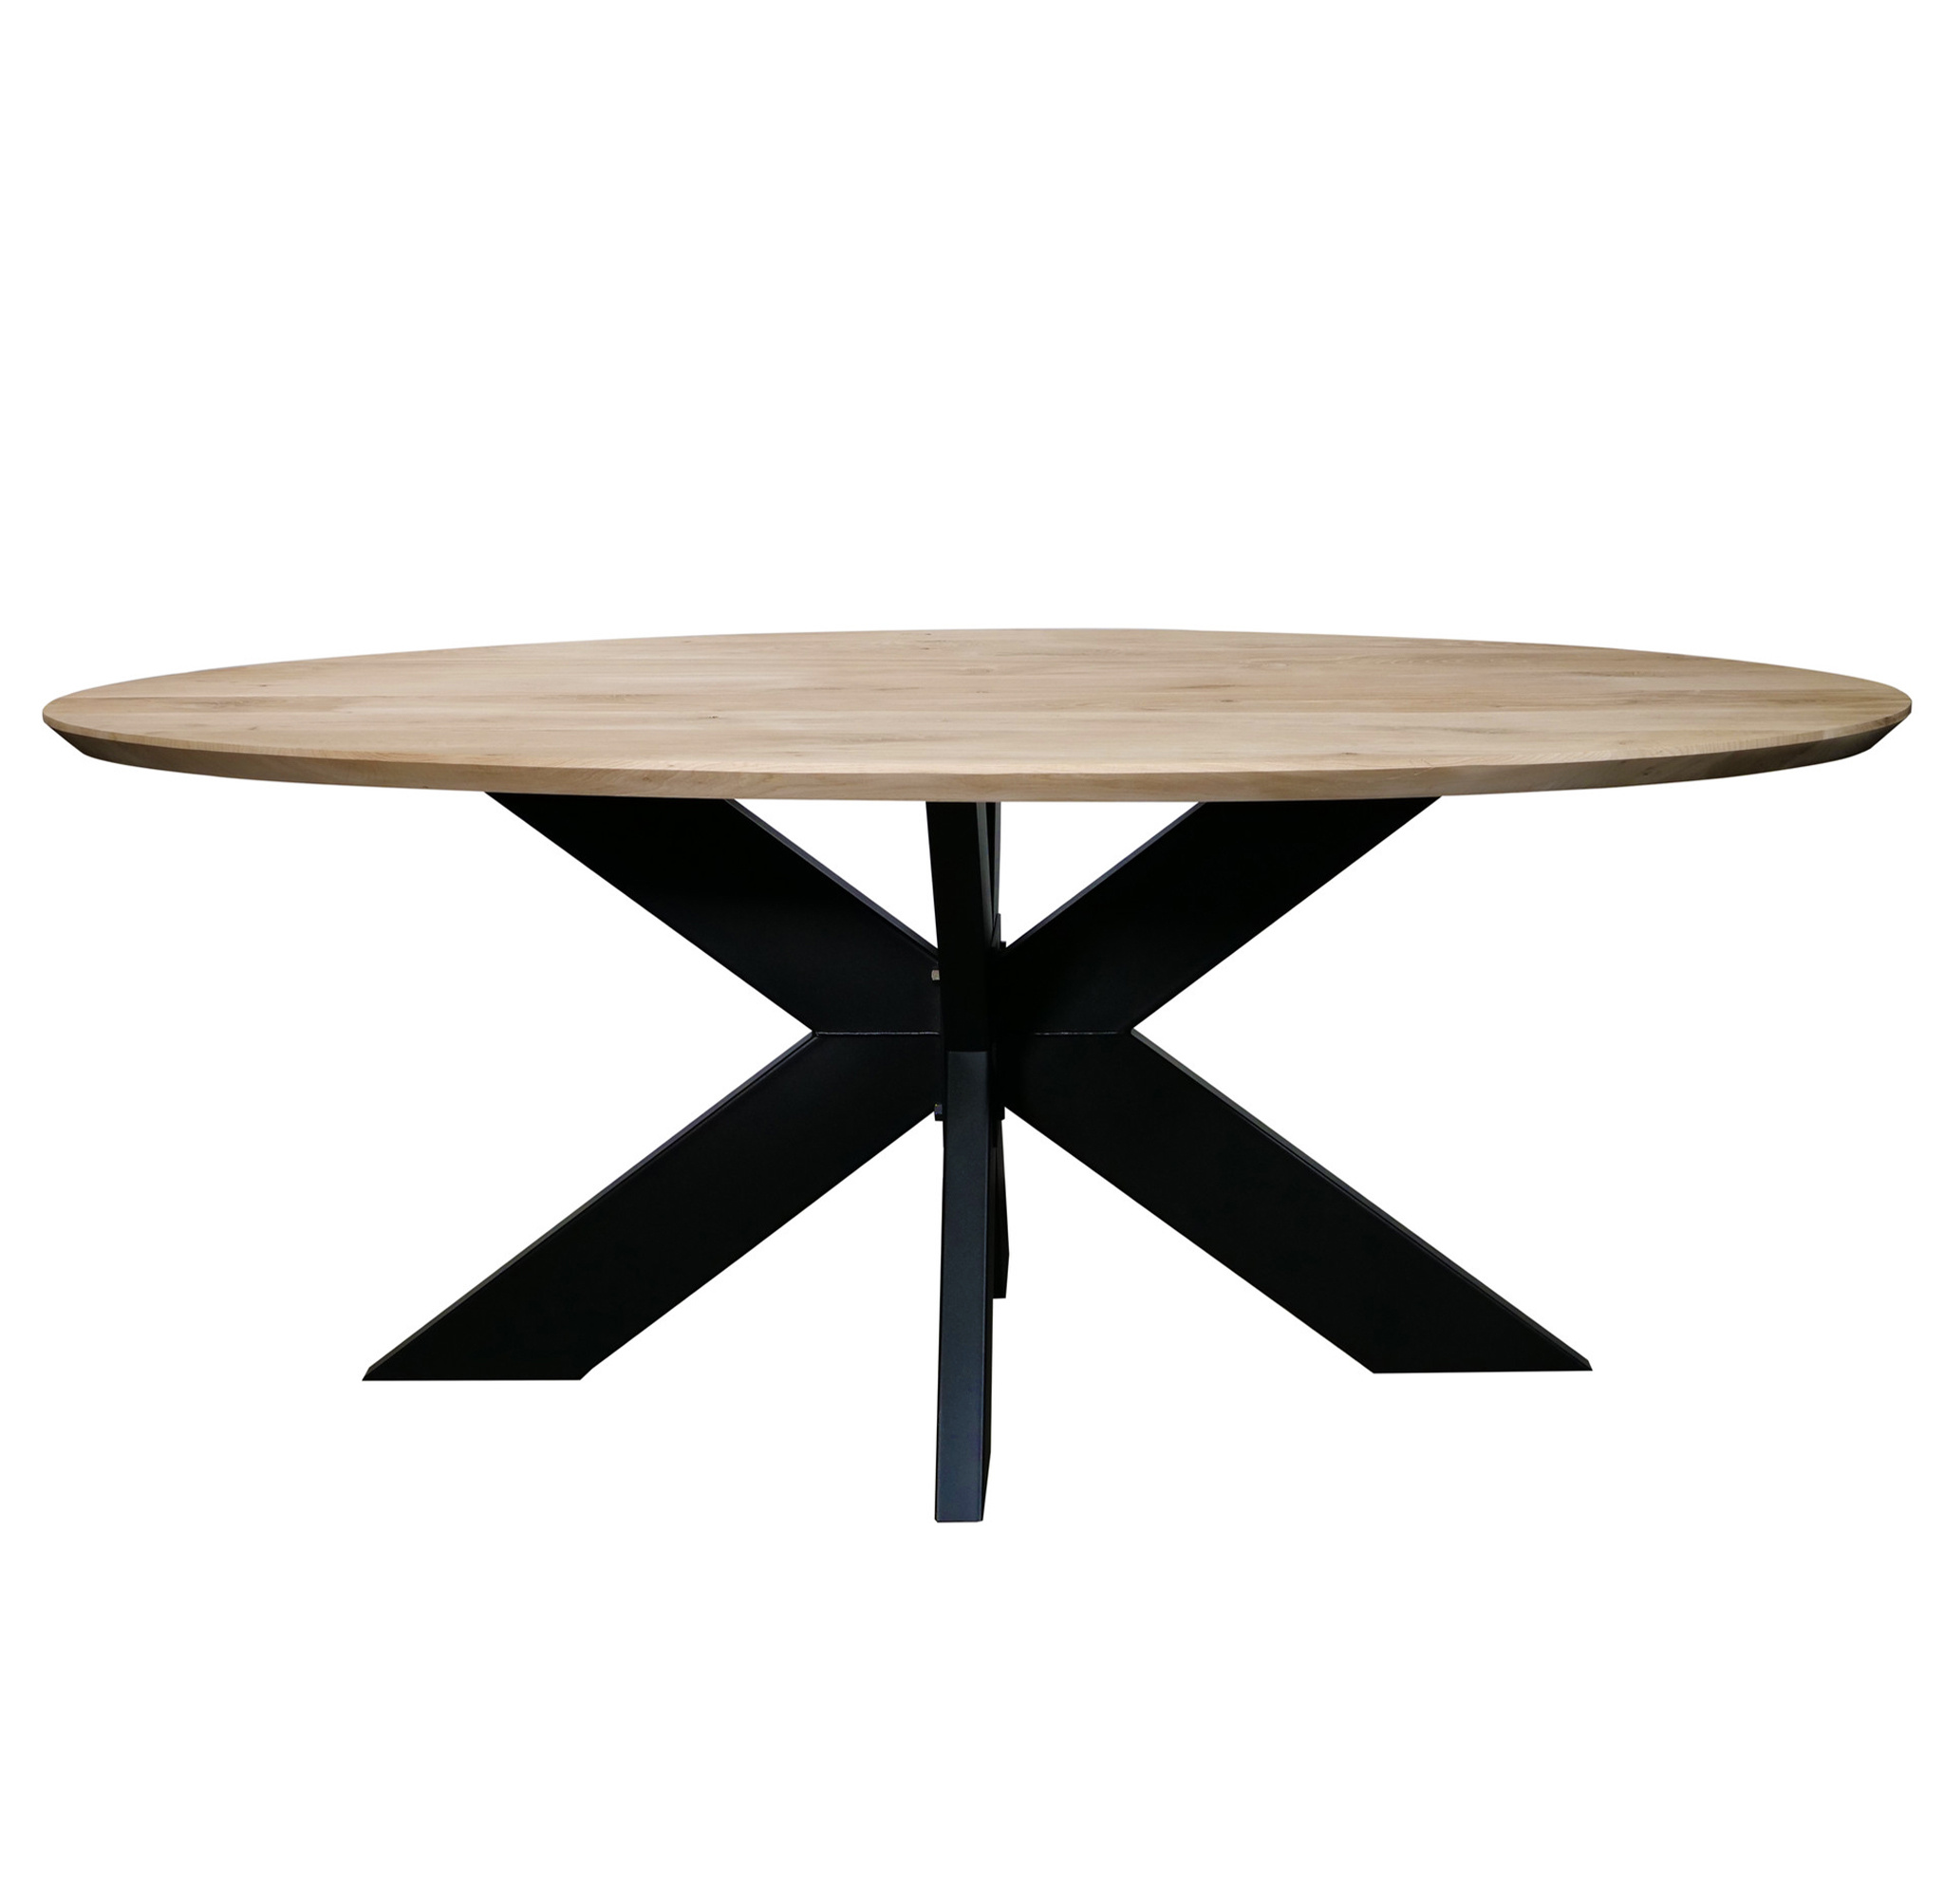  Tischplatte Eiche oval - 2,5 cm dick - Eichenholz Rustikal - Ellipse Eiche Tischplatte massiv - HF 8-12%